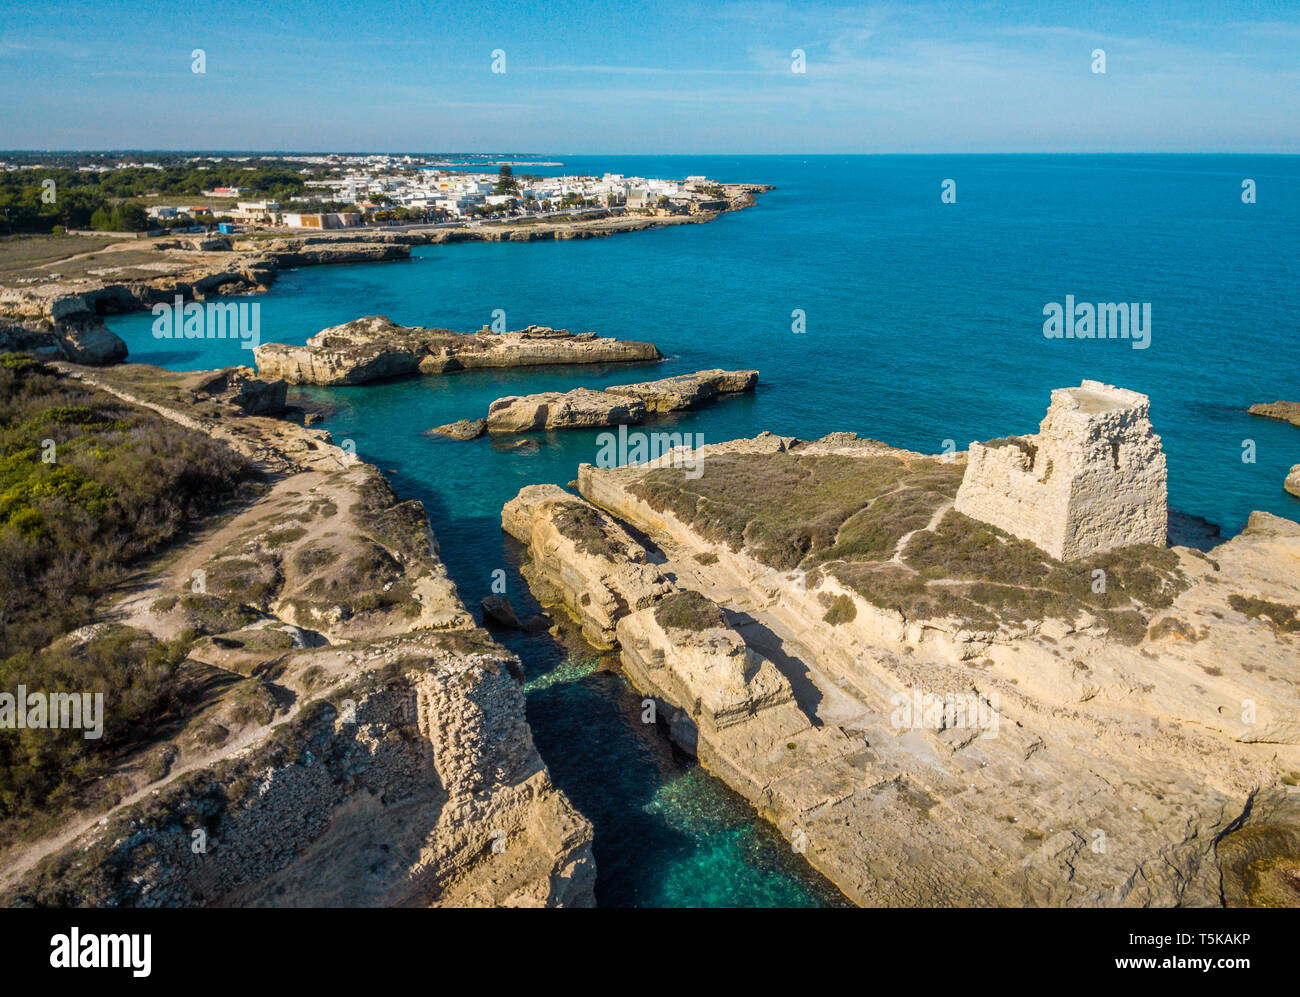 Coastline near Roca Vecchia, province of Lecce, in the Salento region of Puglia, southern Italy. Stock Photo